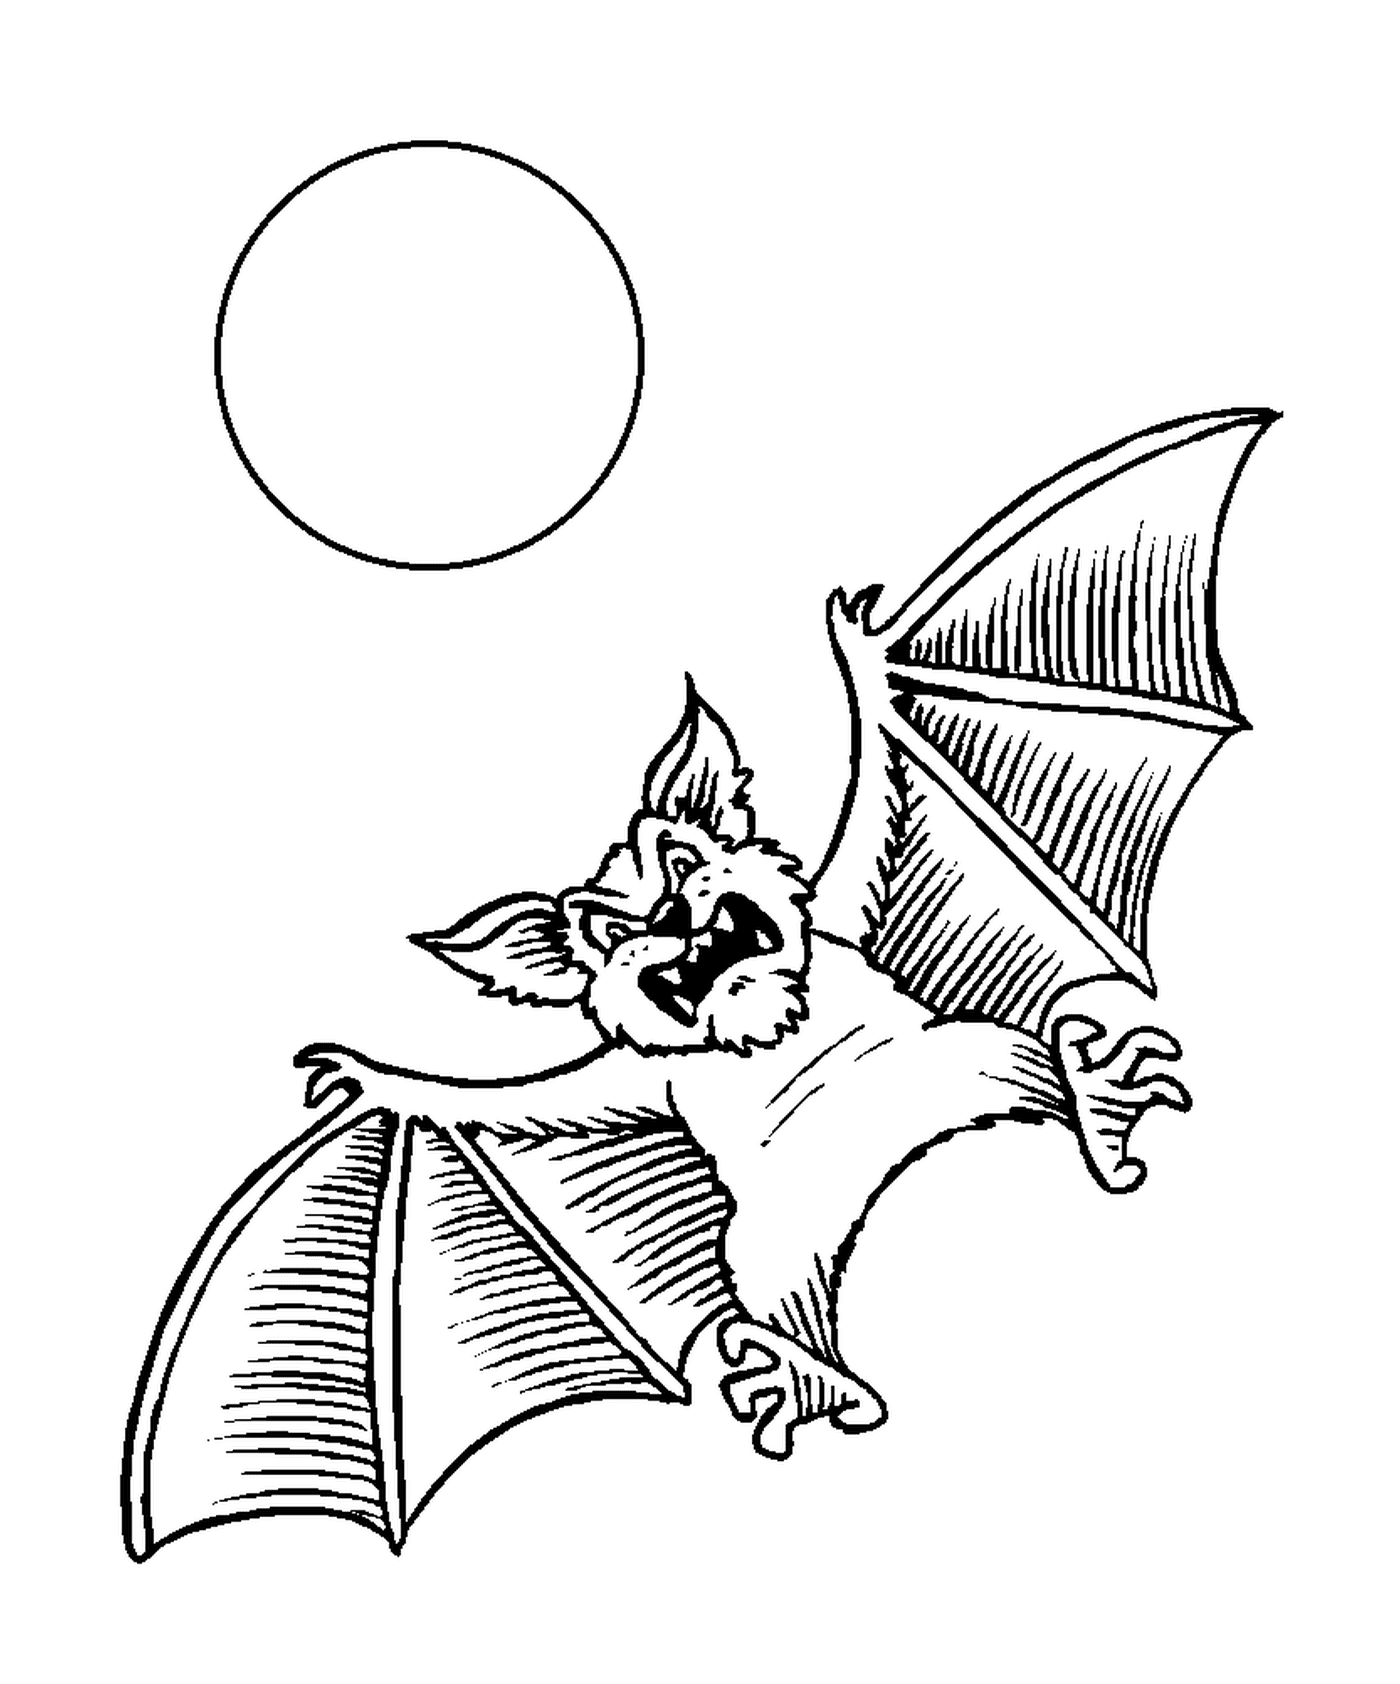  pipistrello che vola davanti alla luna 